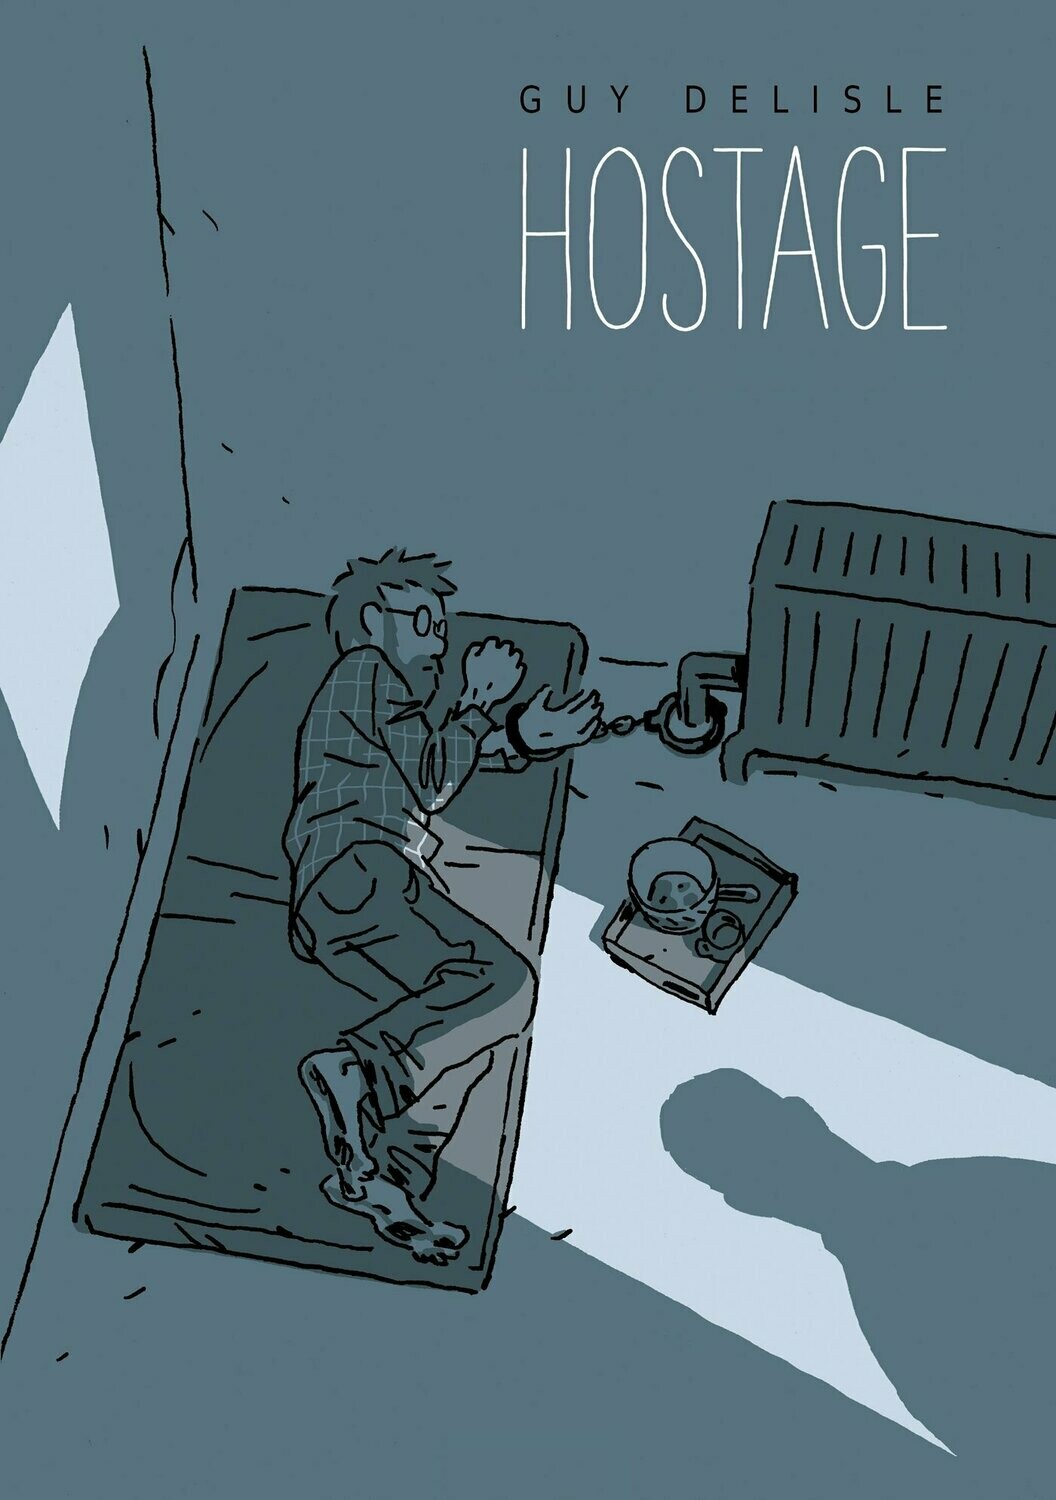 Delisle: Hostage